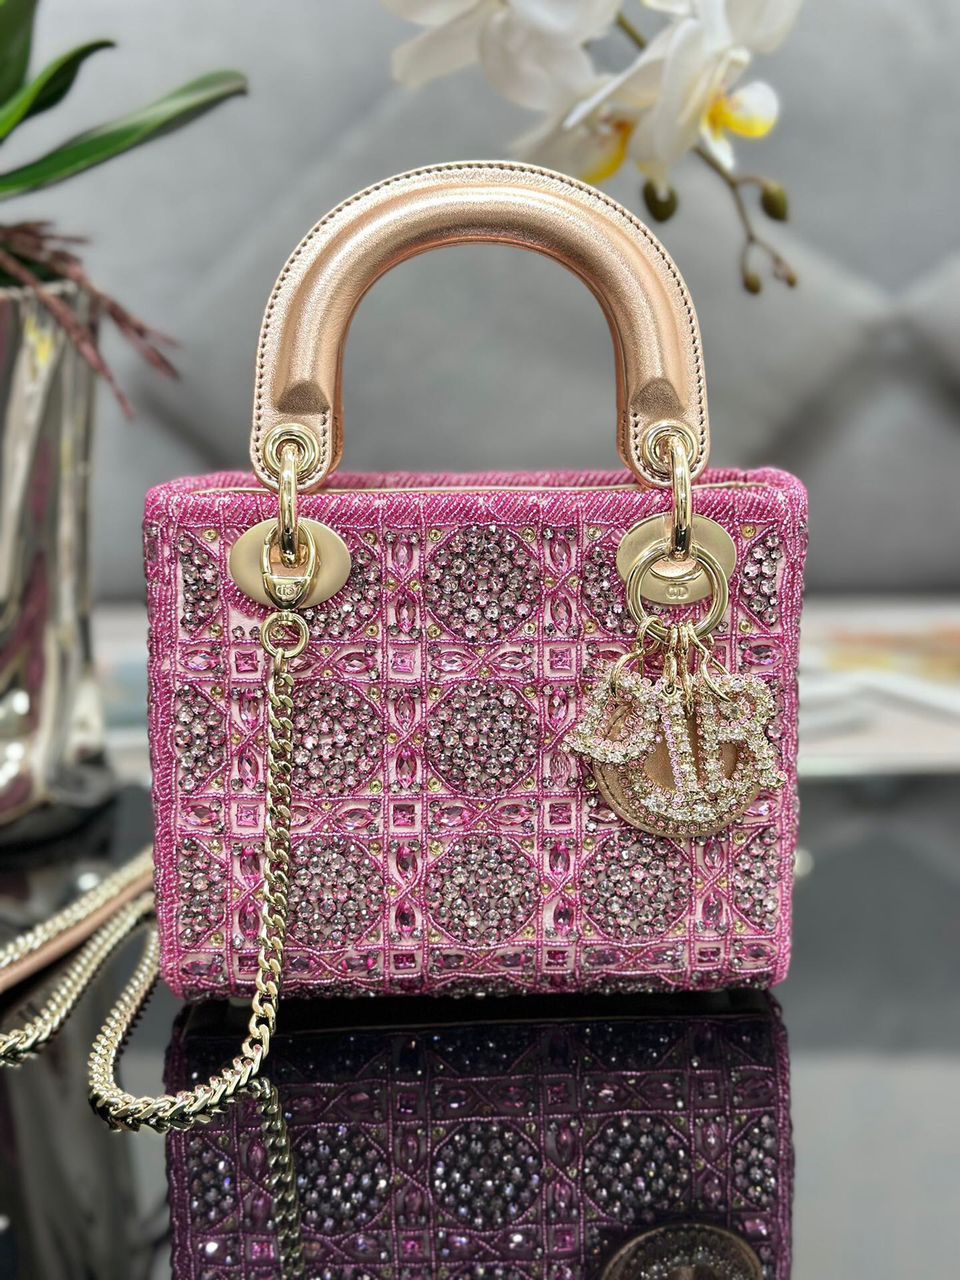 Lady Dior, Dior Bag 